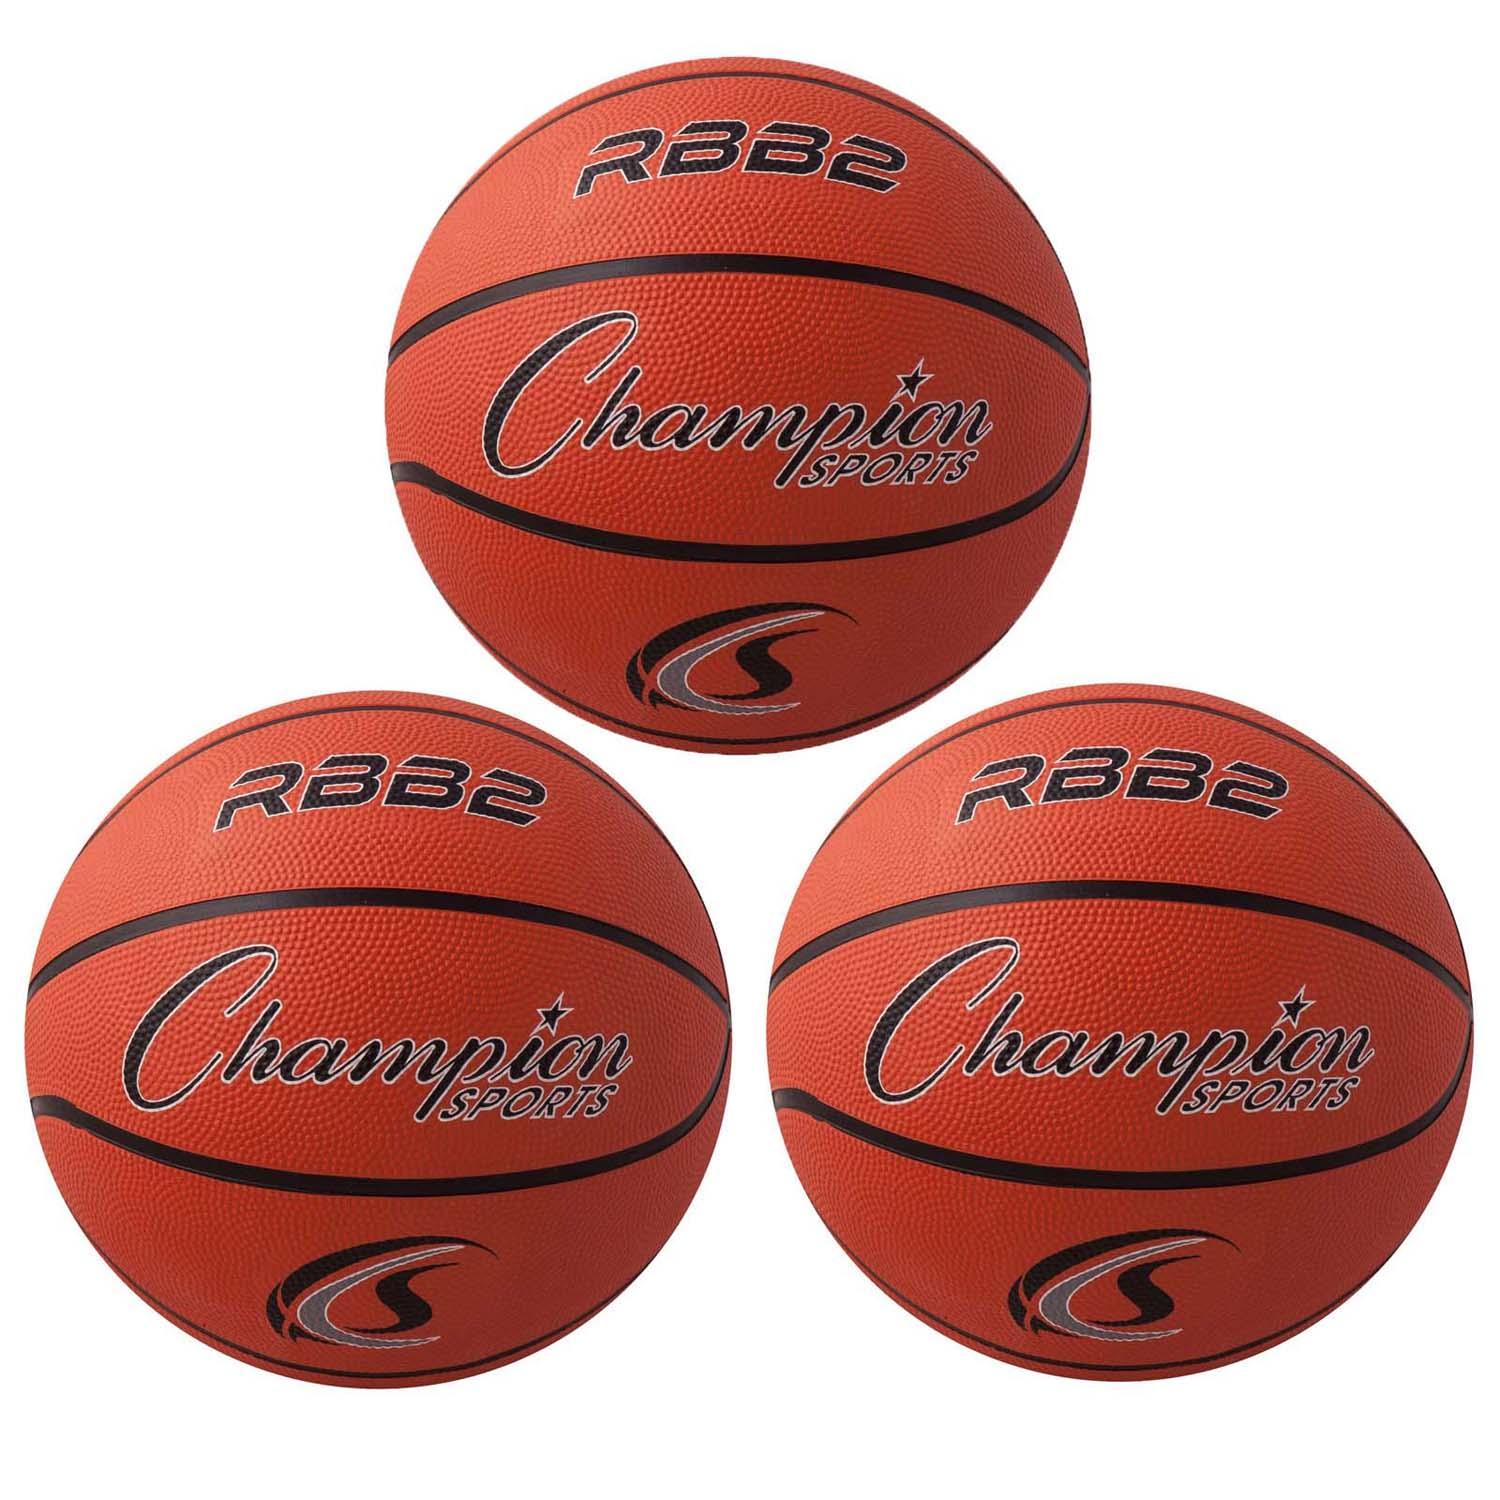 Junior Rubber Basketball, Orange, Pack of 3 - Loomini